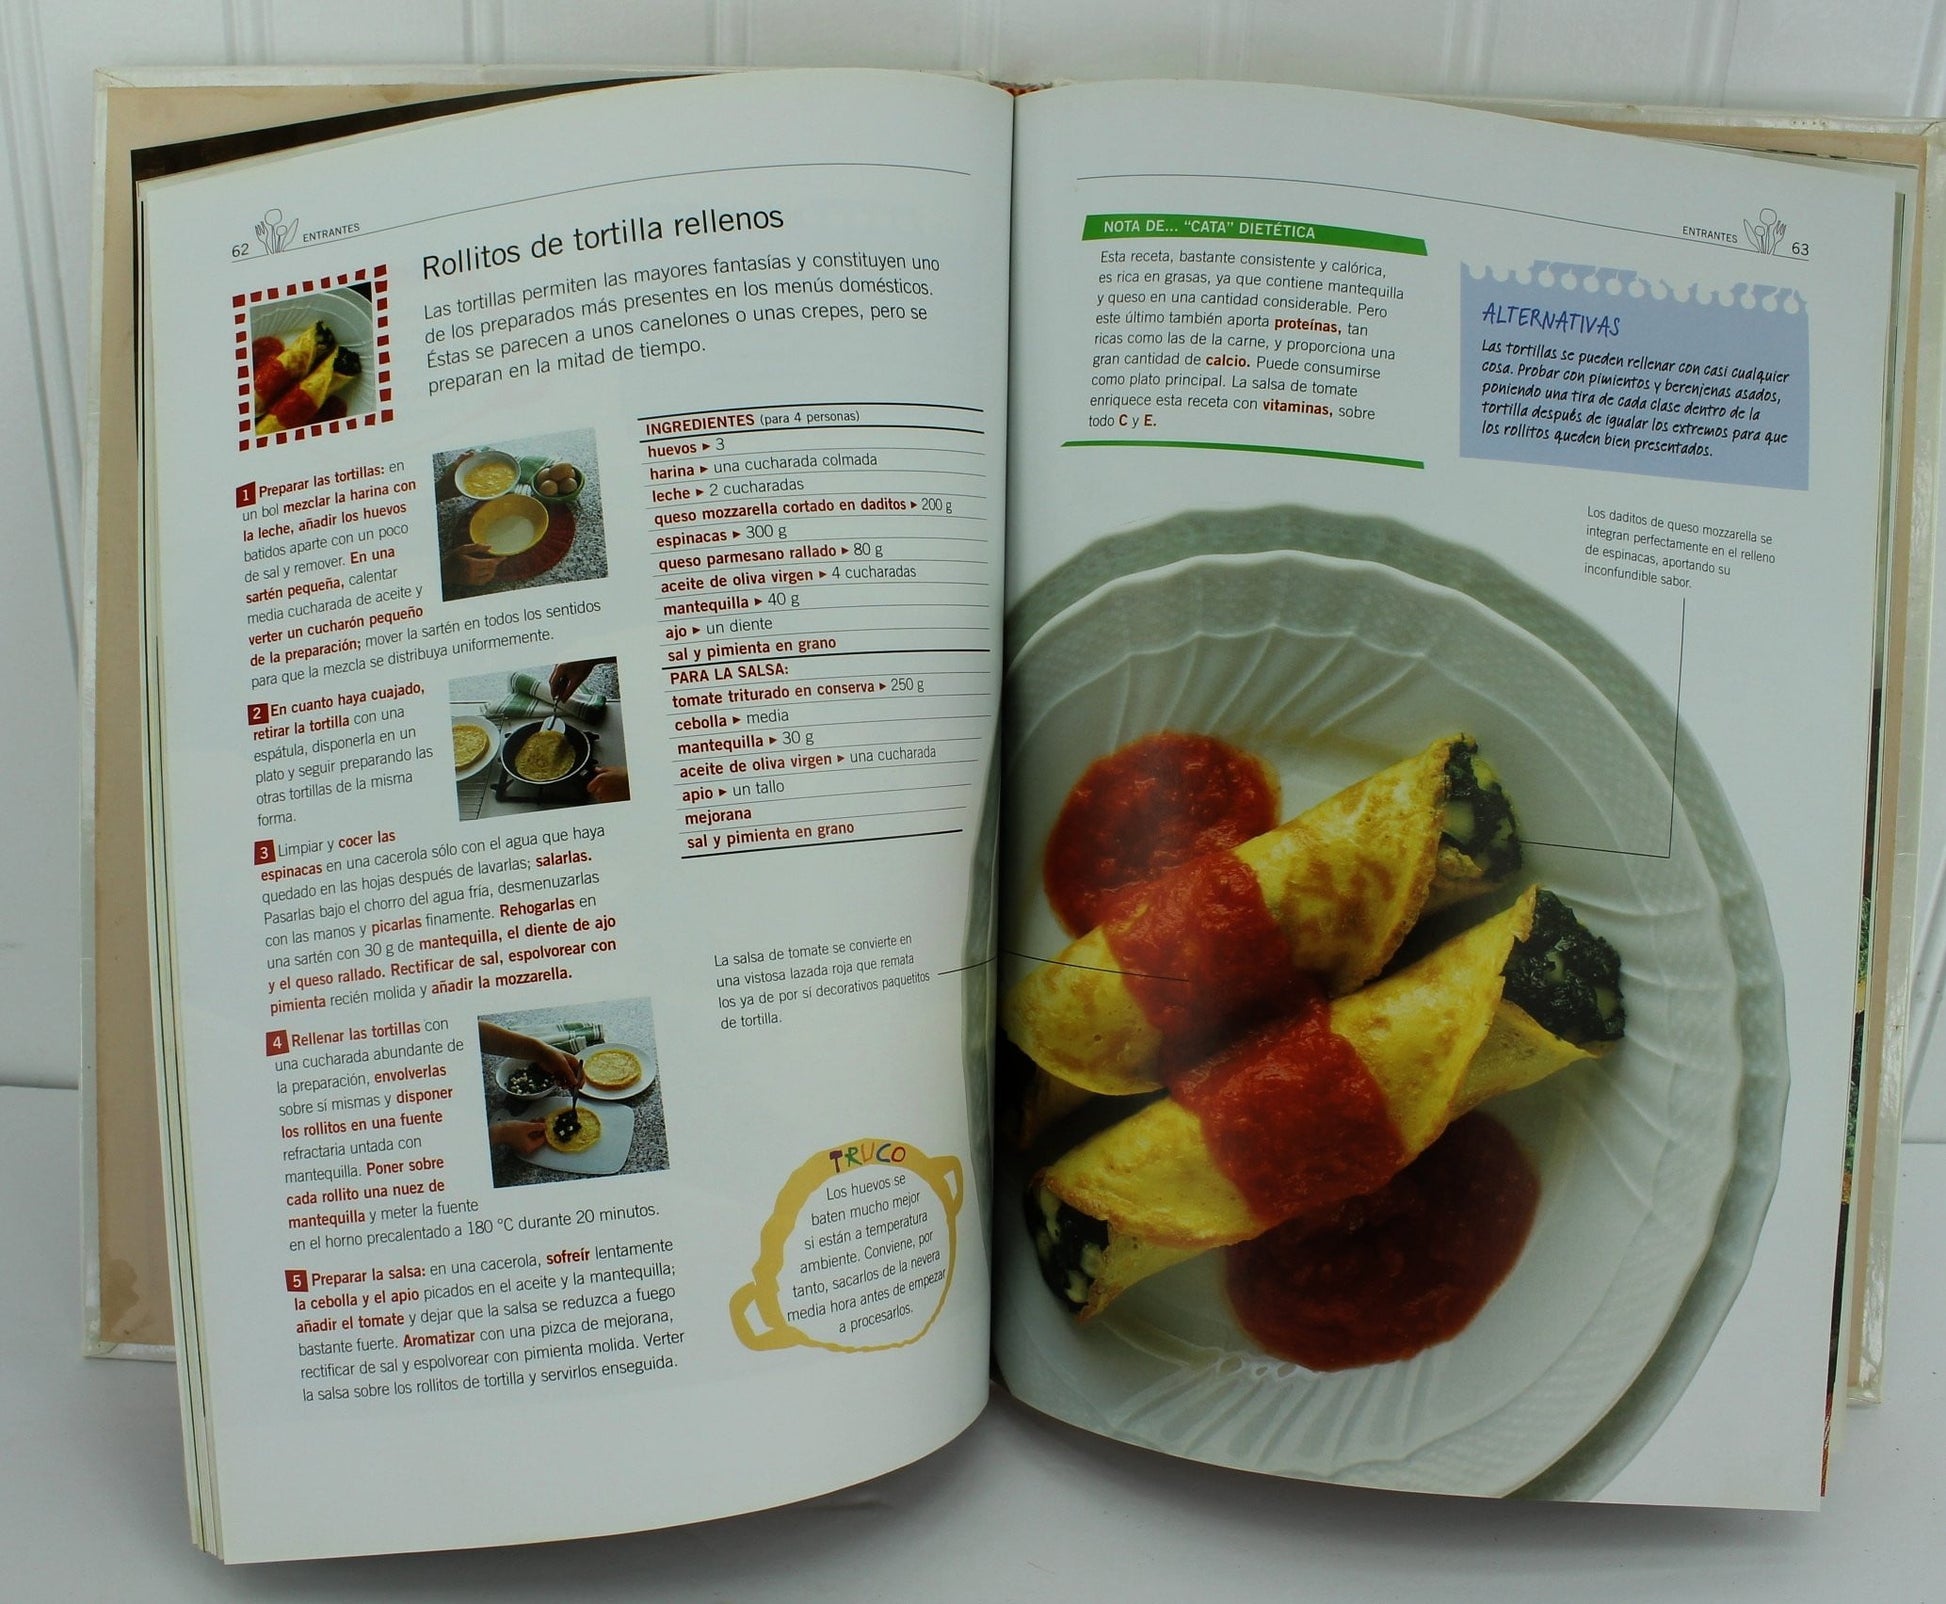 Bastin Cookbook Madrid "La Buena Mesa" Ensaladas Entrantes Aperitivos en Espanol all recipes in spanish